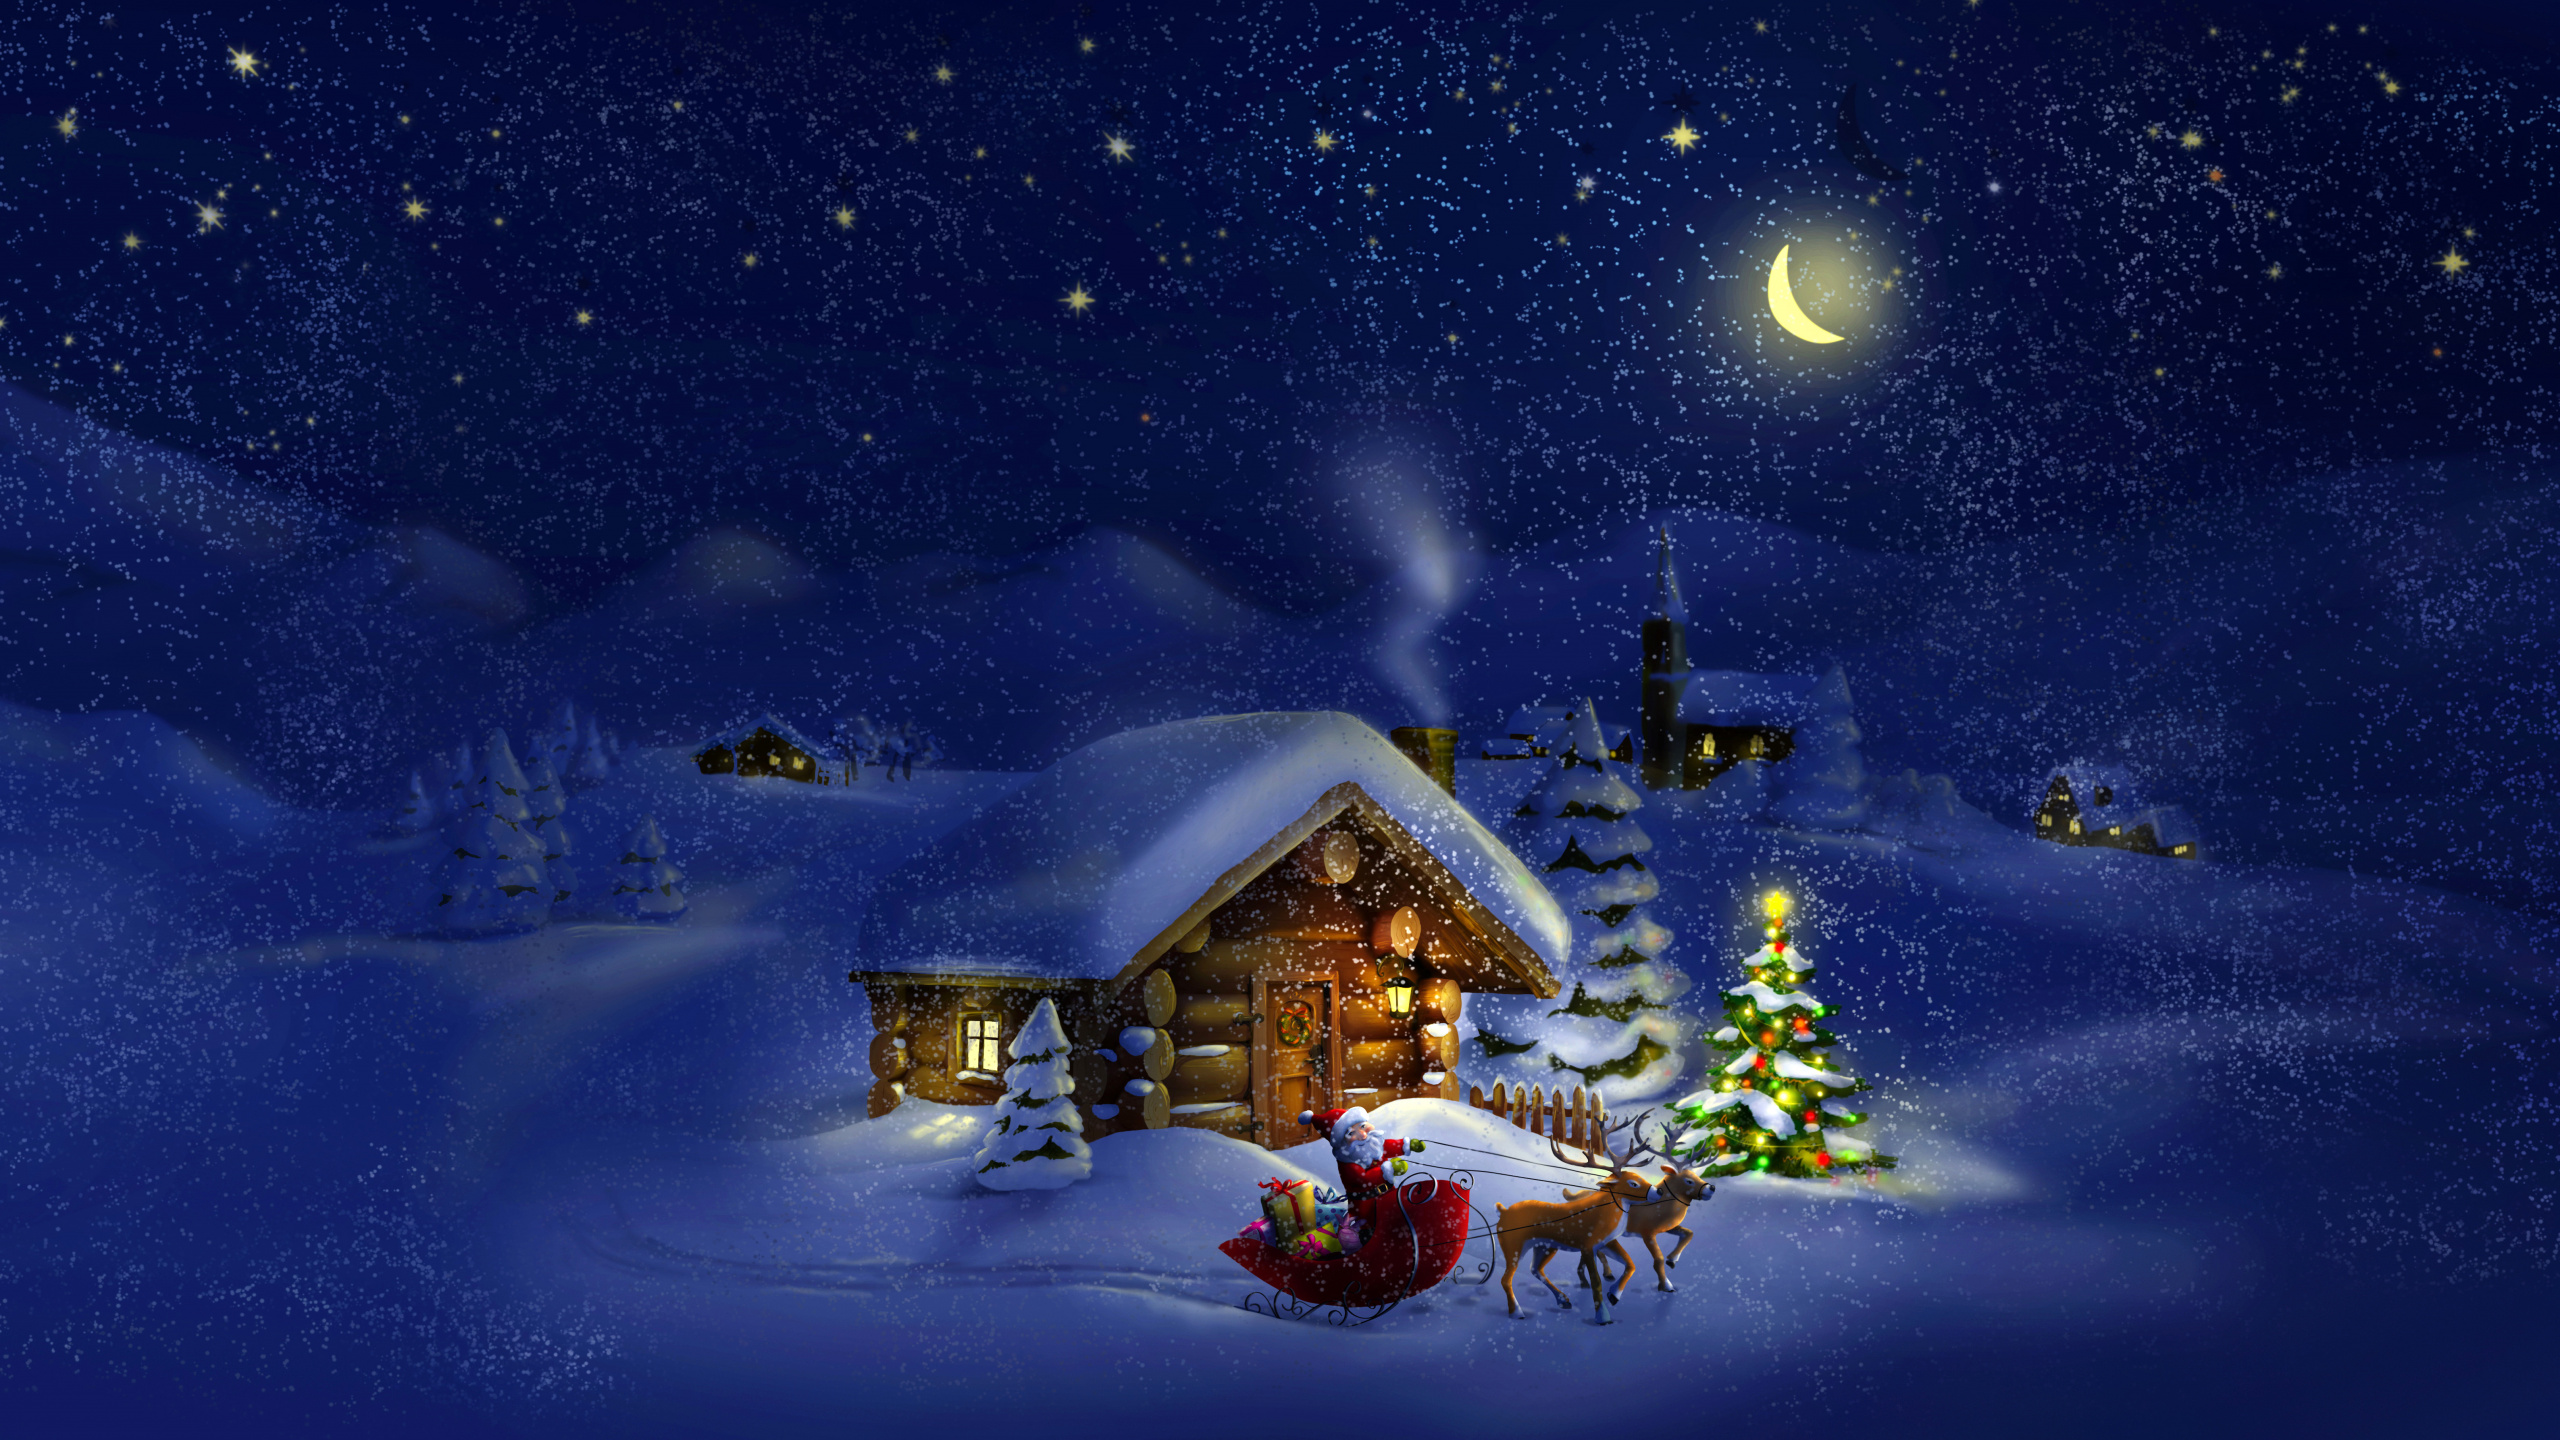 圣诞节那天, 圣诞老人, 假日, 冬天, 圣诞节 壁纸 2560x1440 允许